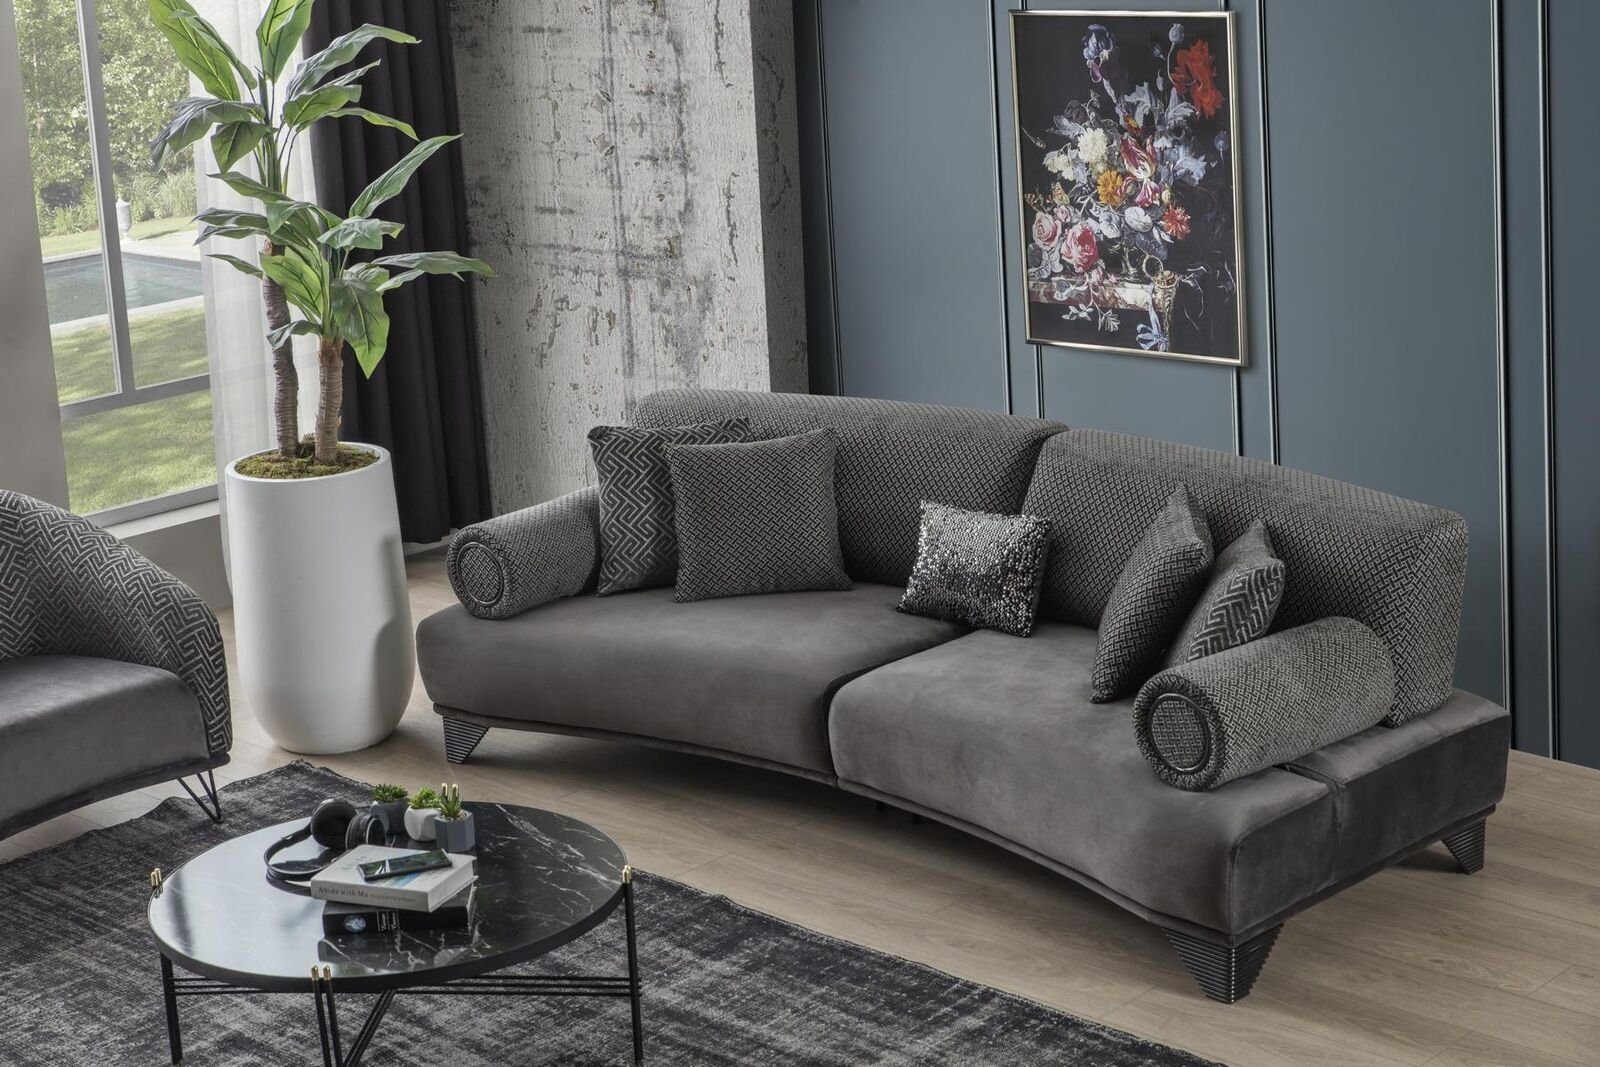 JVmoebel Sofa Luxus Sofa Dreisitzer Wohnzimmer Gebogene Couch Stoff Design